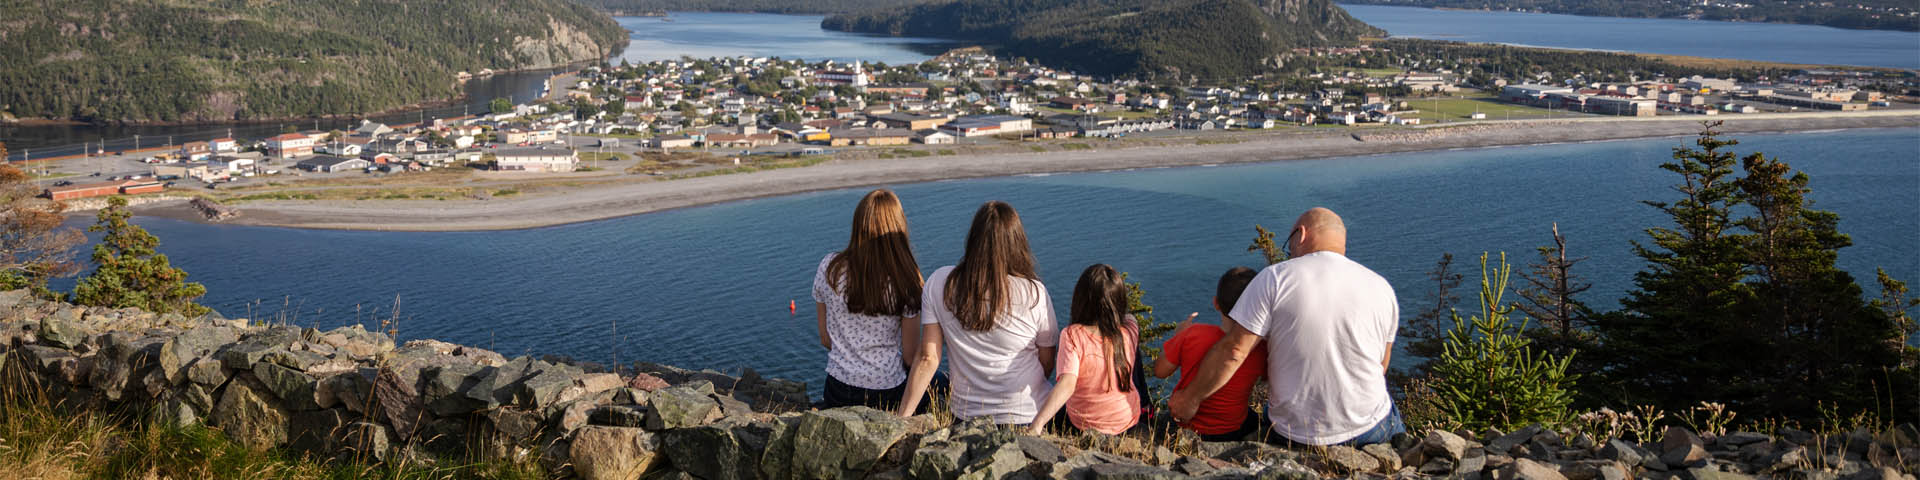 une famille de cinq personnes assise sur un mur de pierre surplombant une ville au bord de l'océan